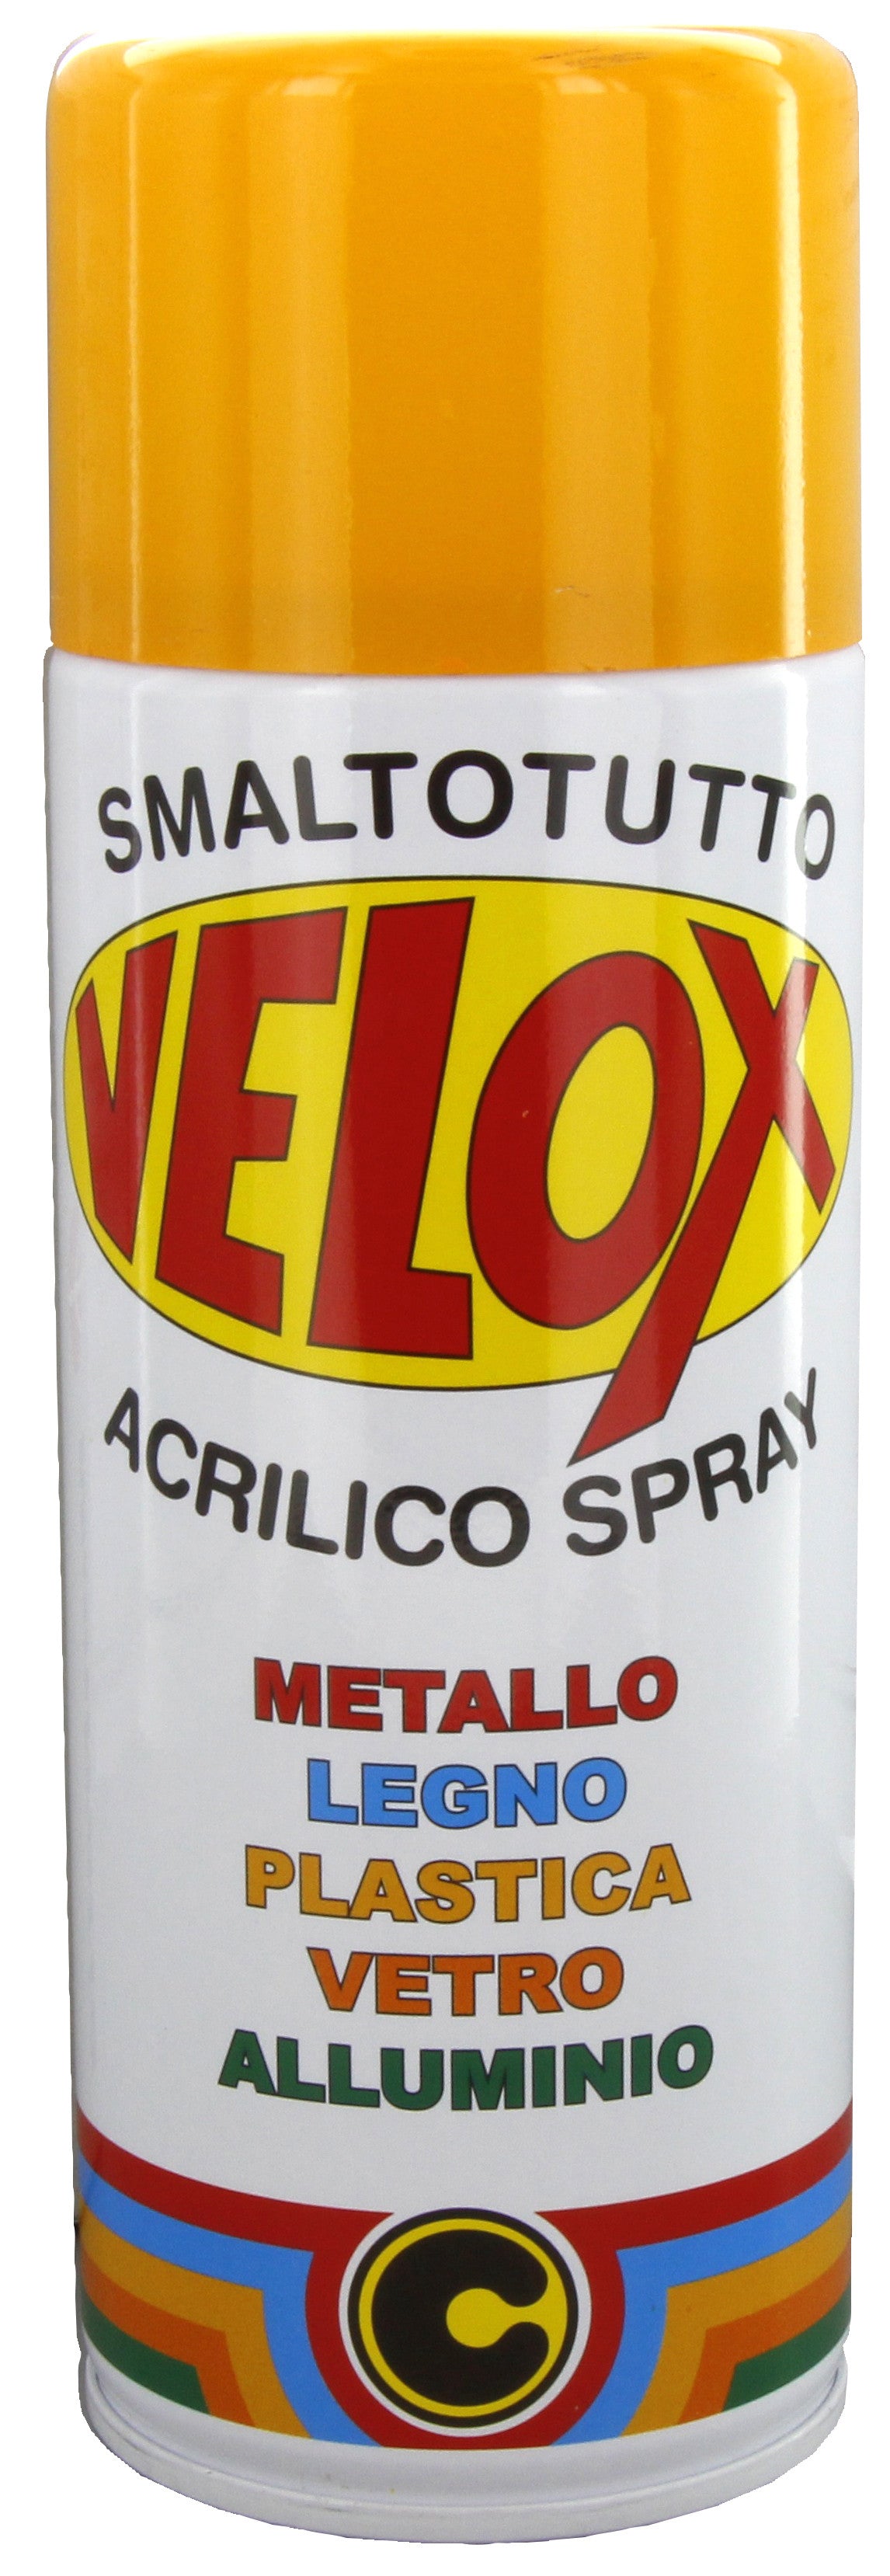 Velox spray acrilico giallo melone ral 1028 ITAL G.E.T.E.